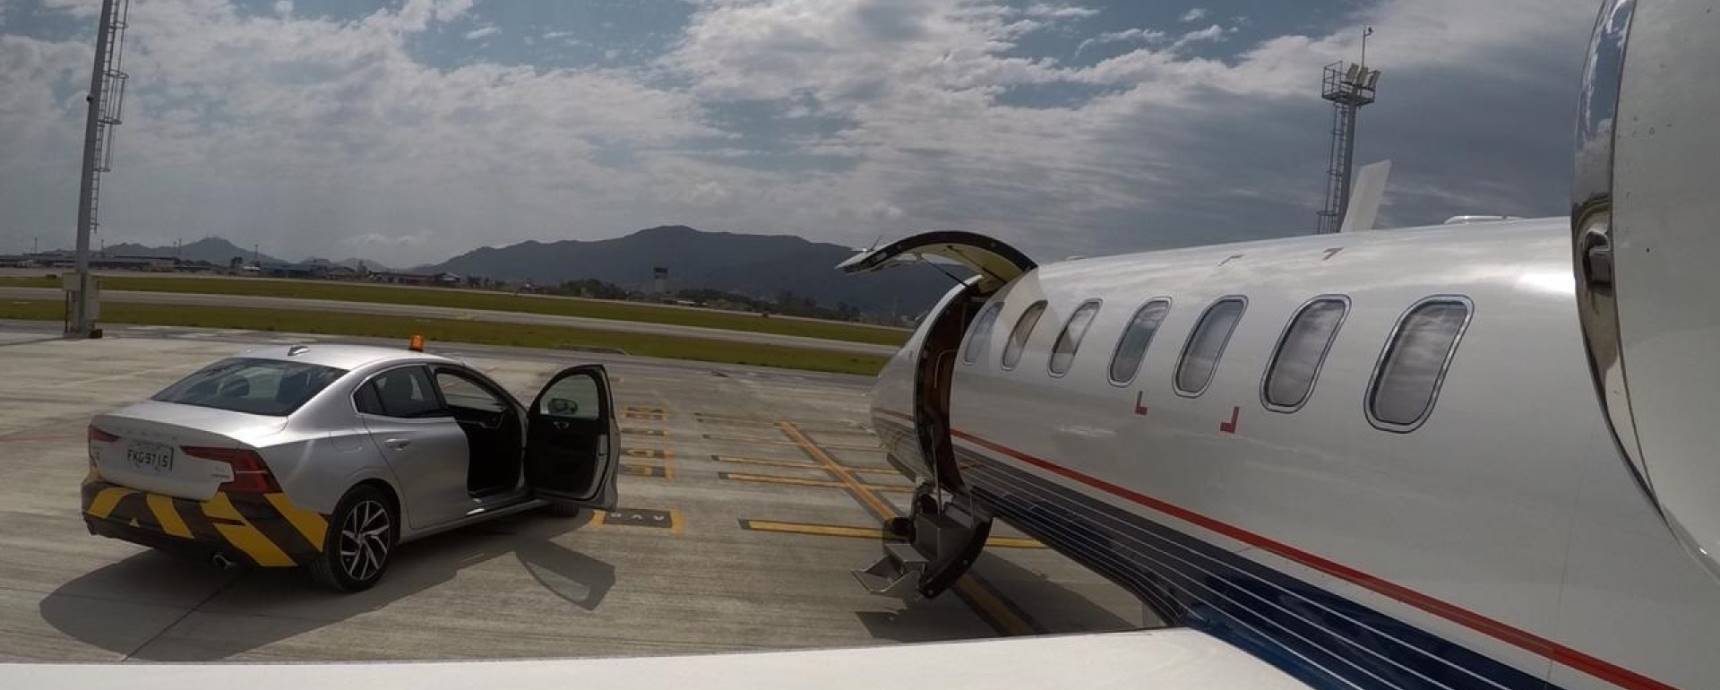 Im Gegensatz zu anderen Flughäfen Floripa Flughafen schätzt Executive Aviation und startet exklusiven Service